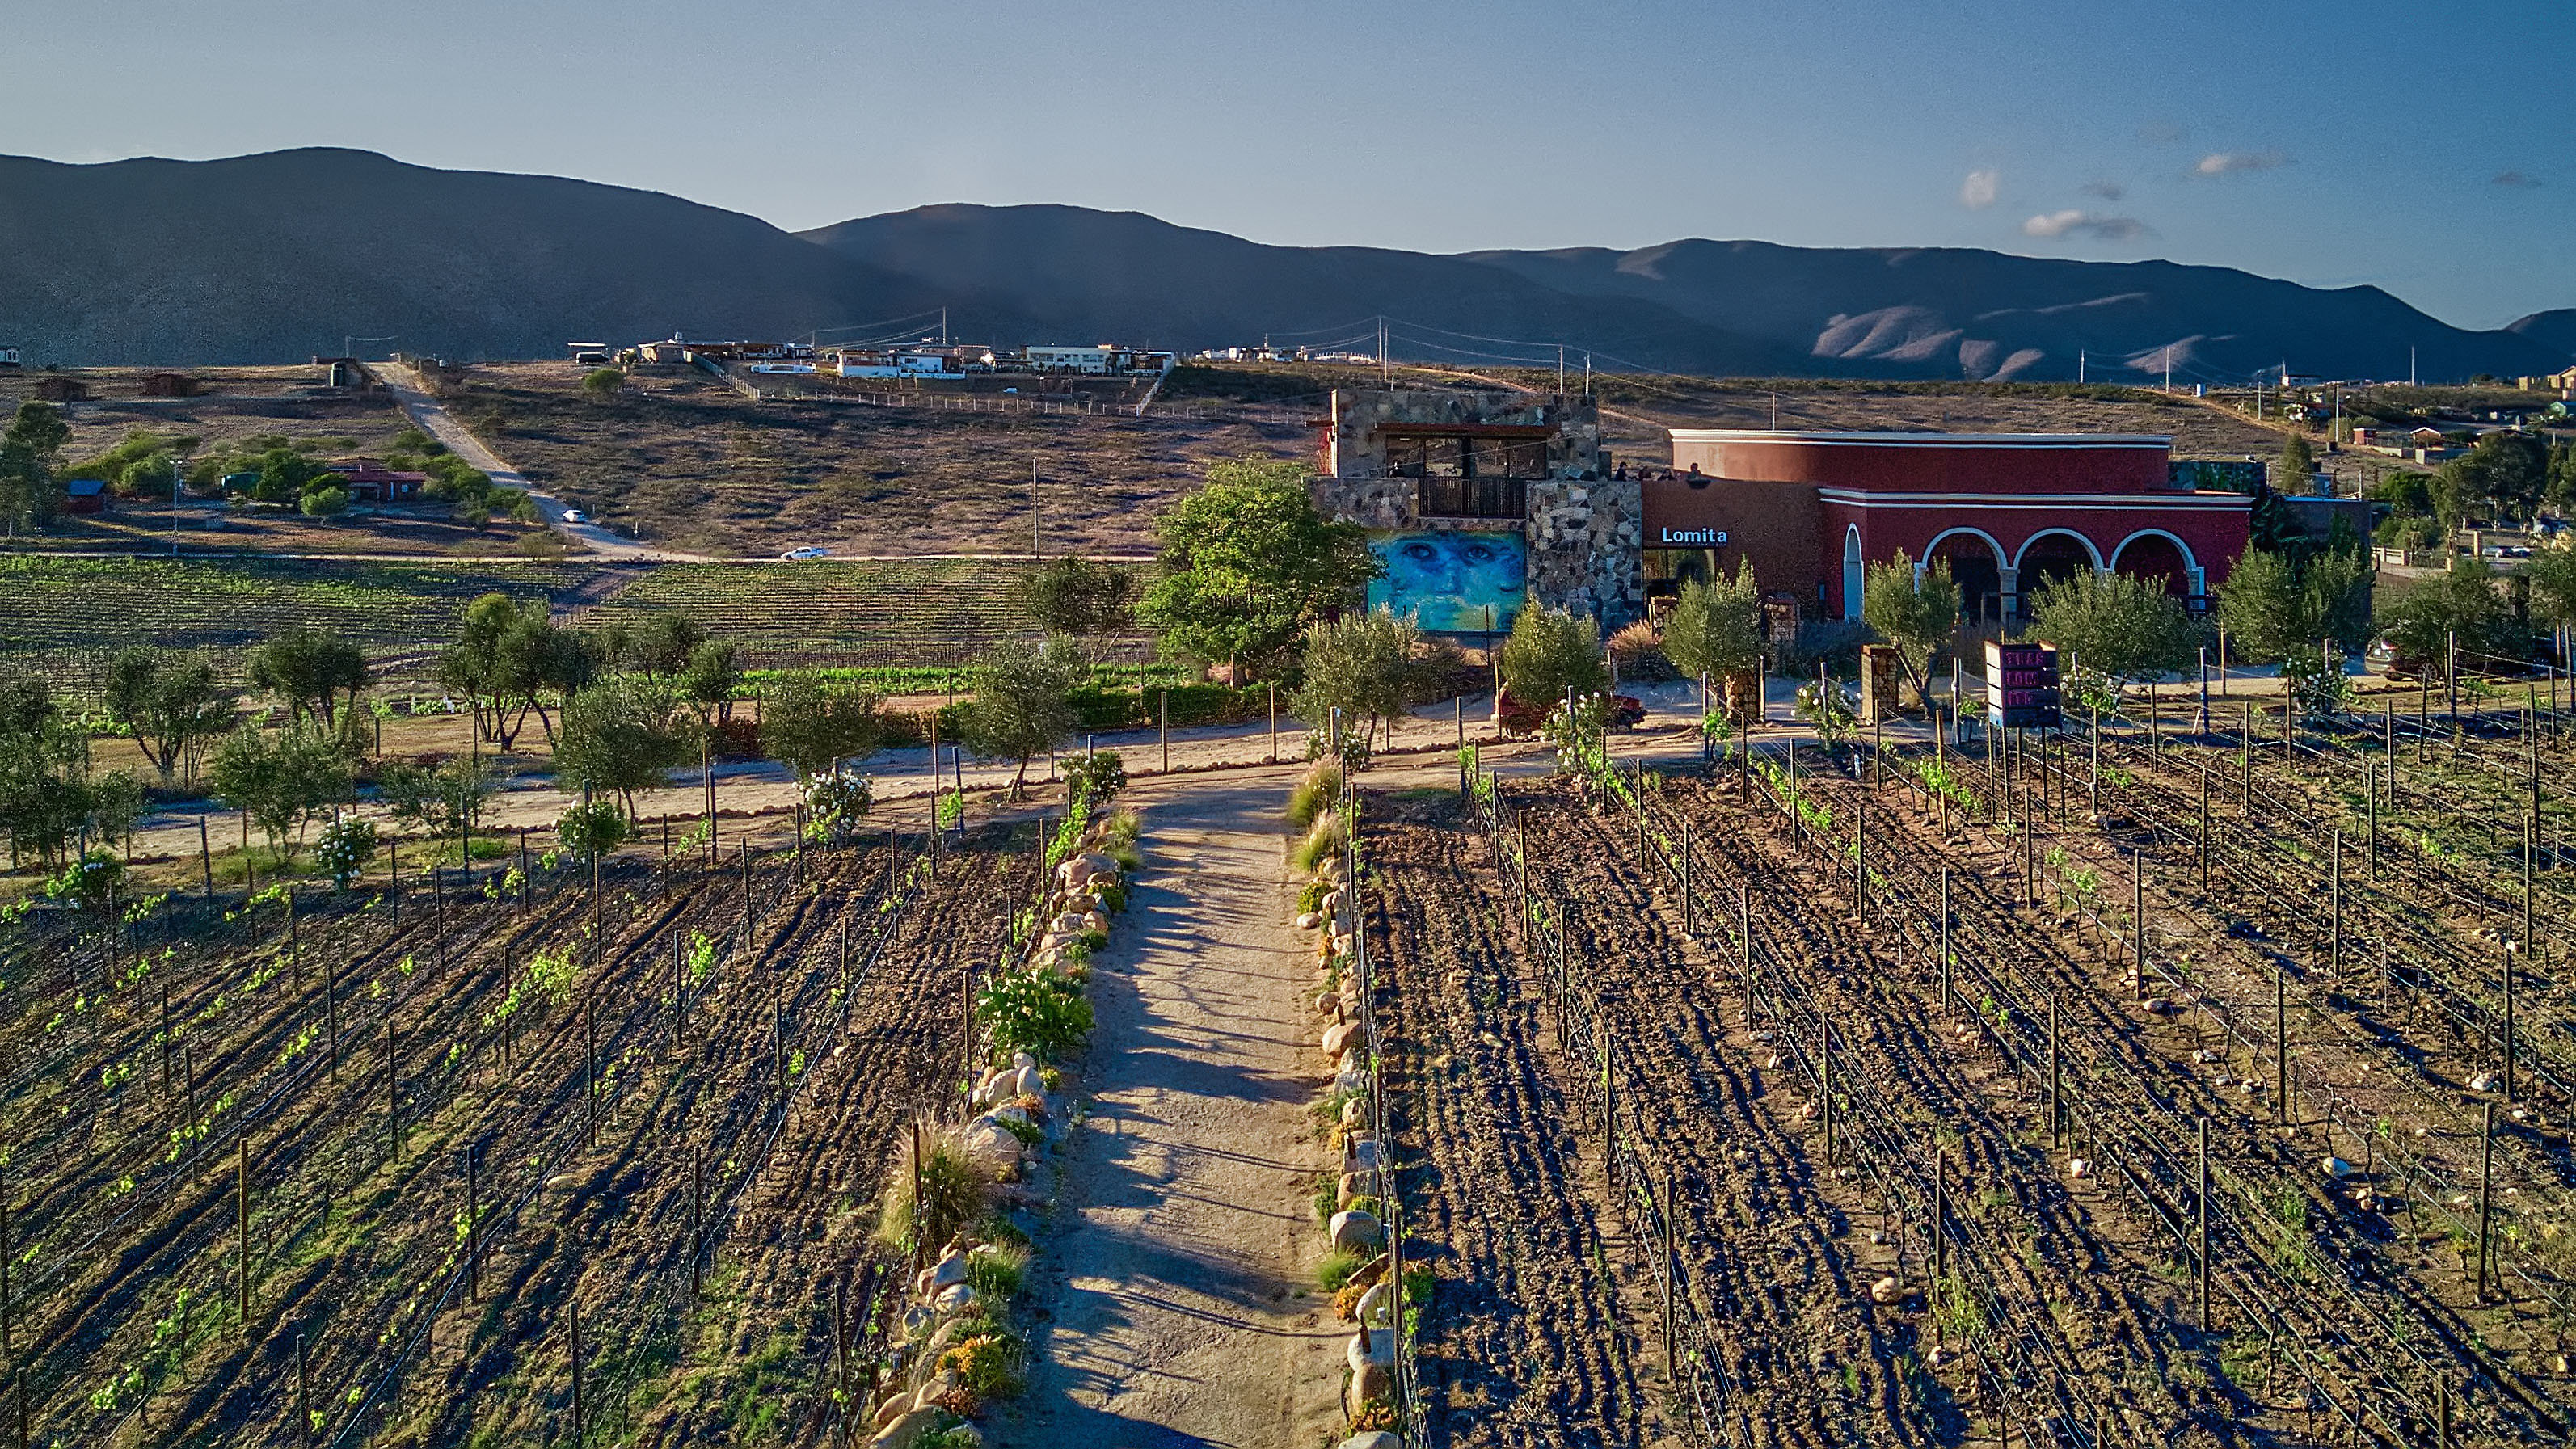 Lomita in Baja Mexico - Wine, Vineyard